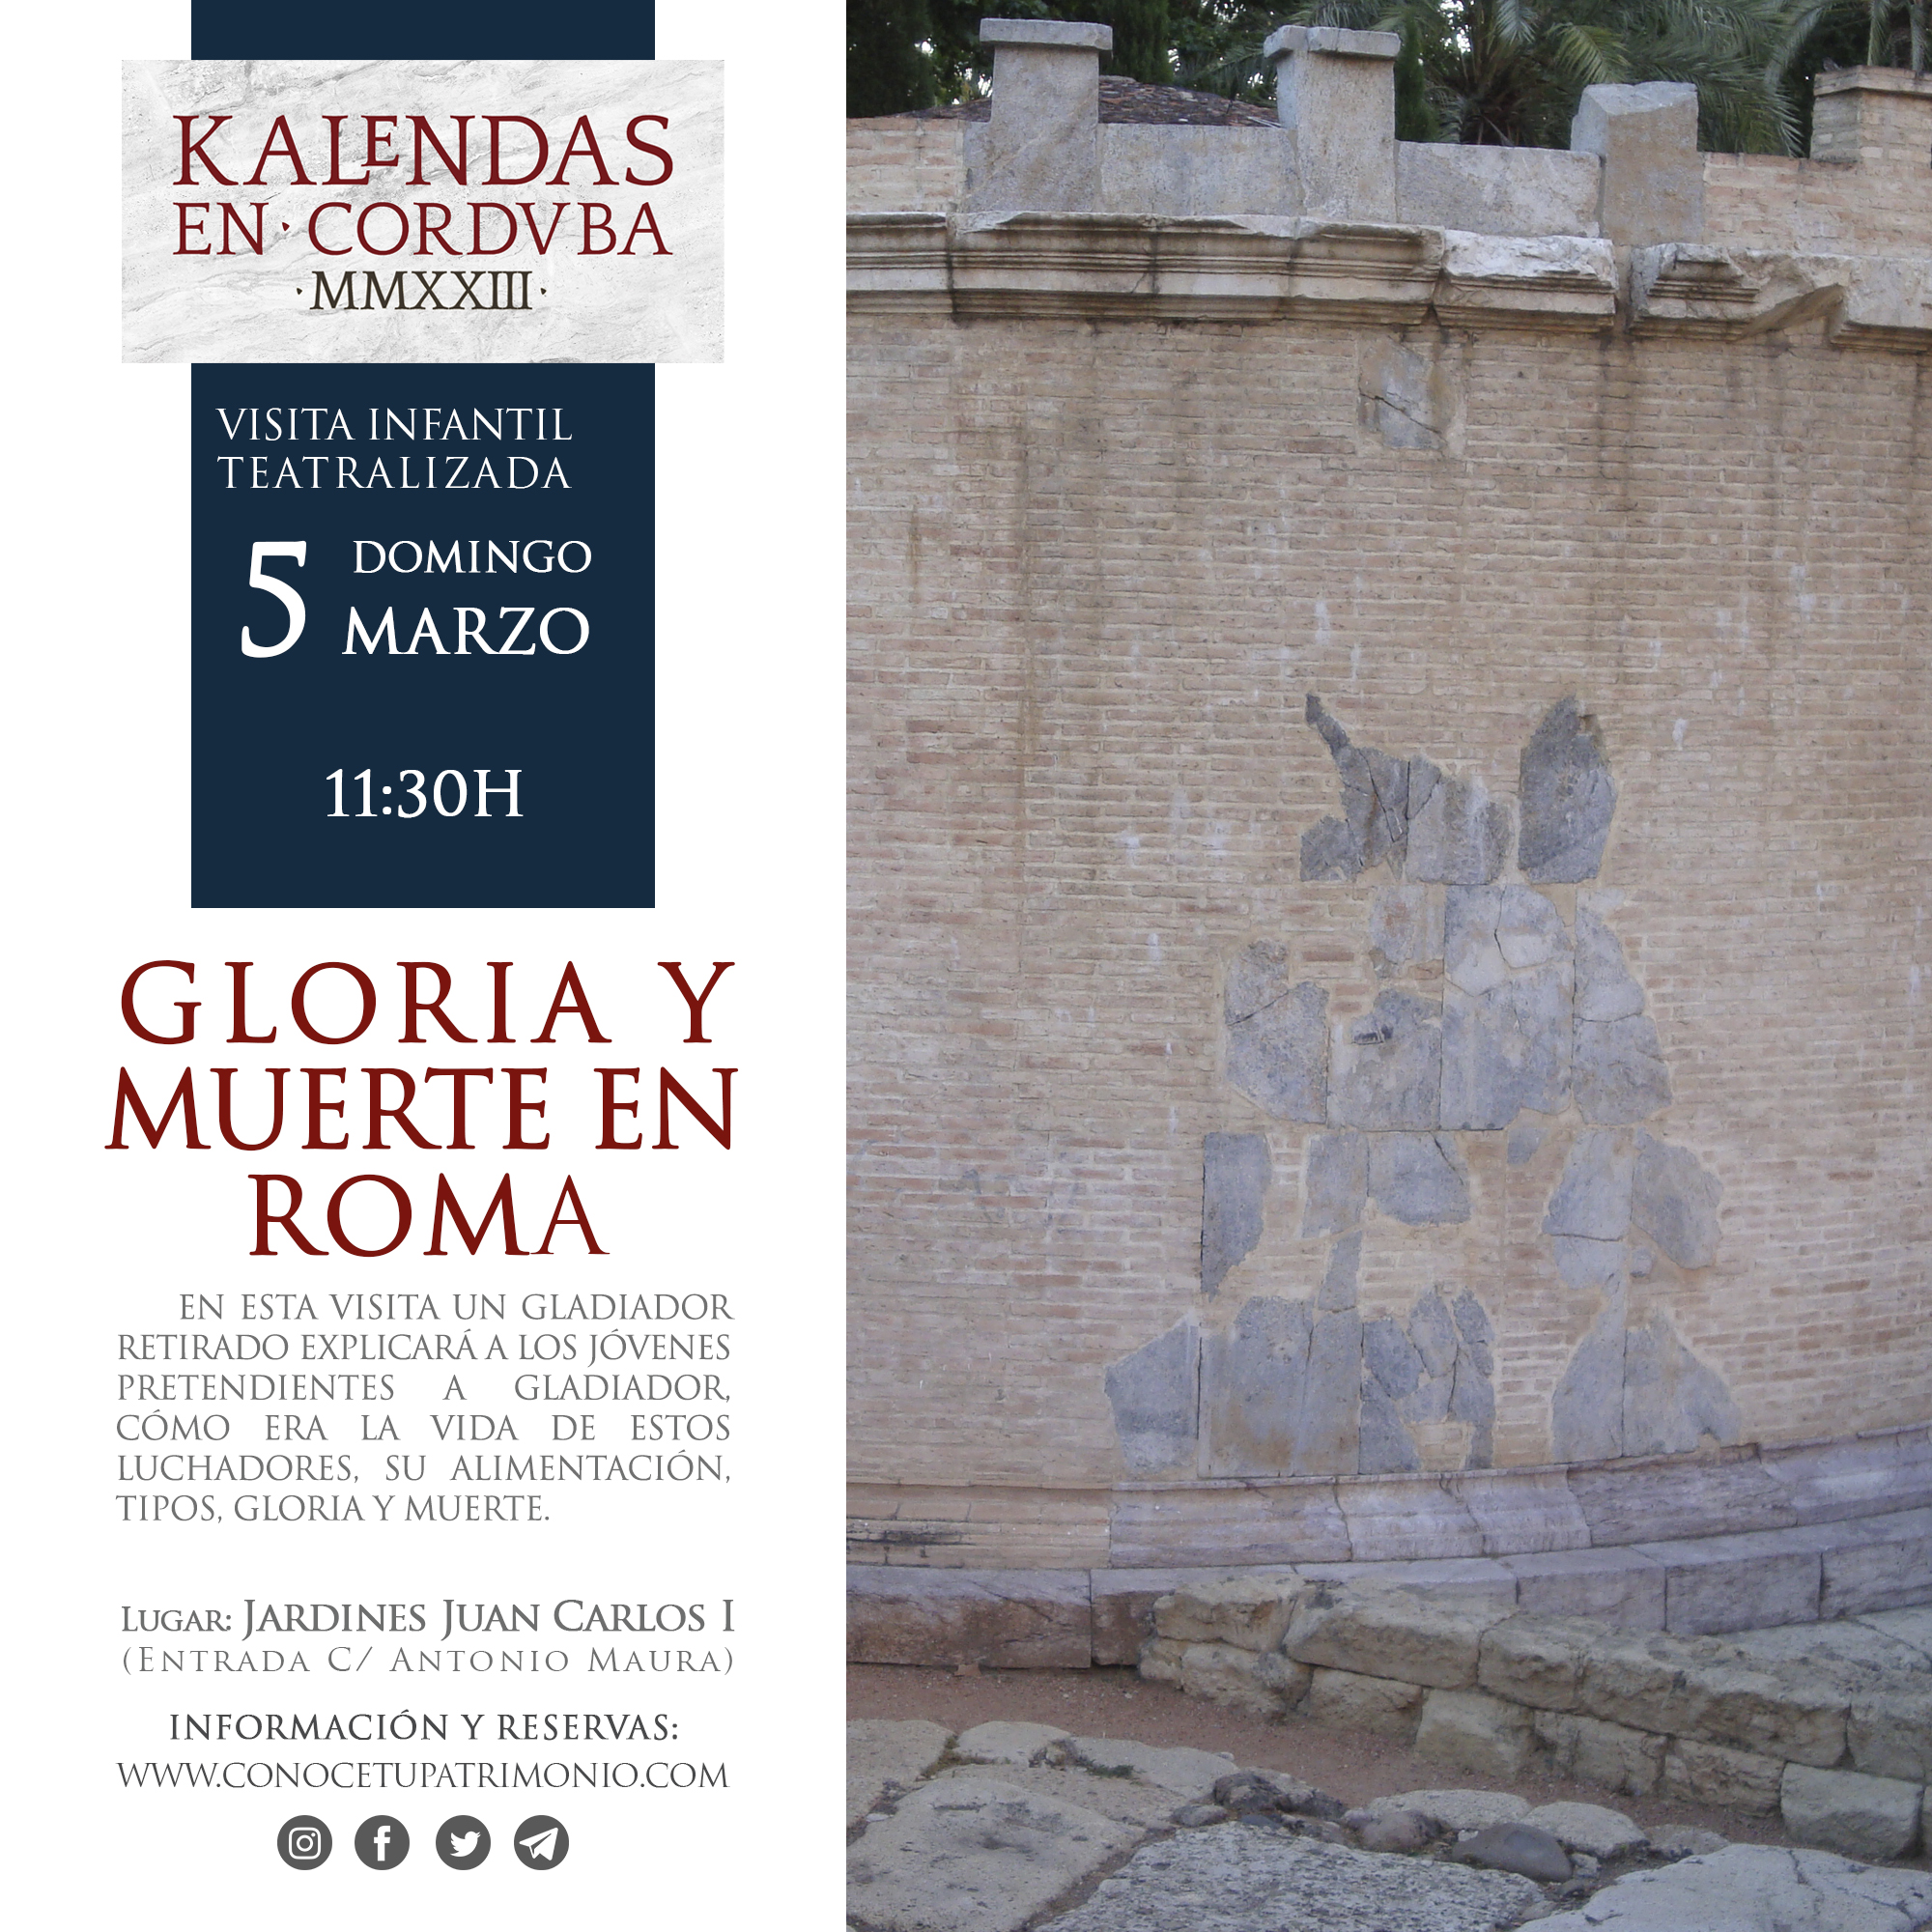 Visita teatralizada infantil - Gloria y muerte en Roma - 5 marzo - 11:30 h.